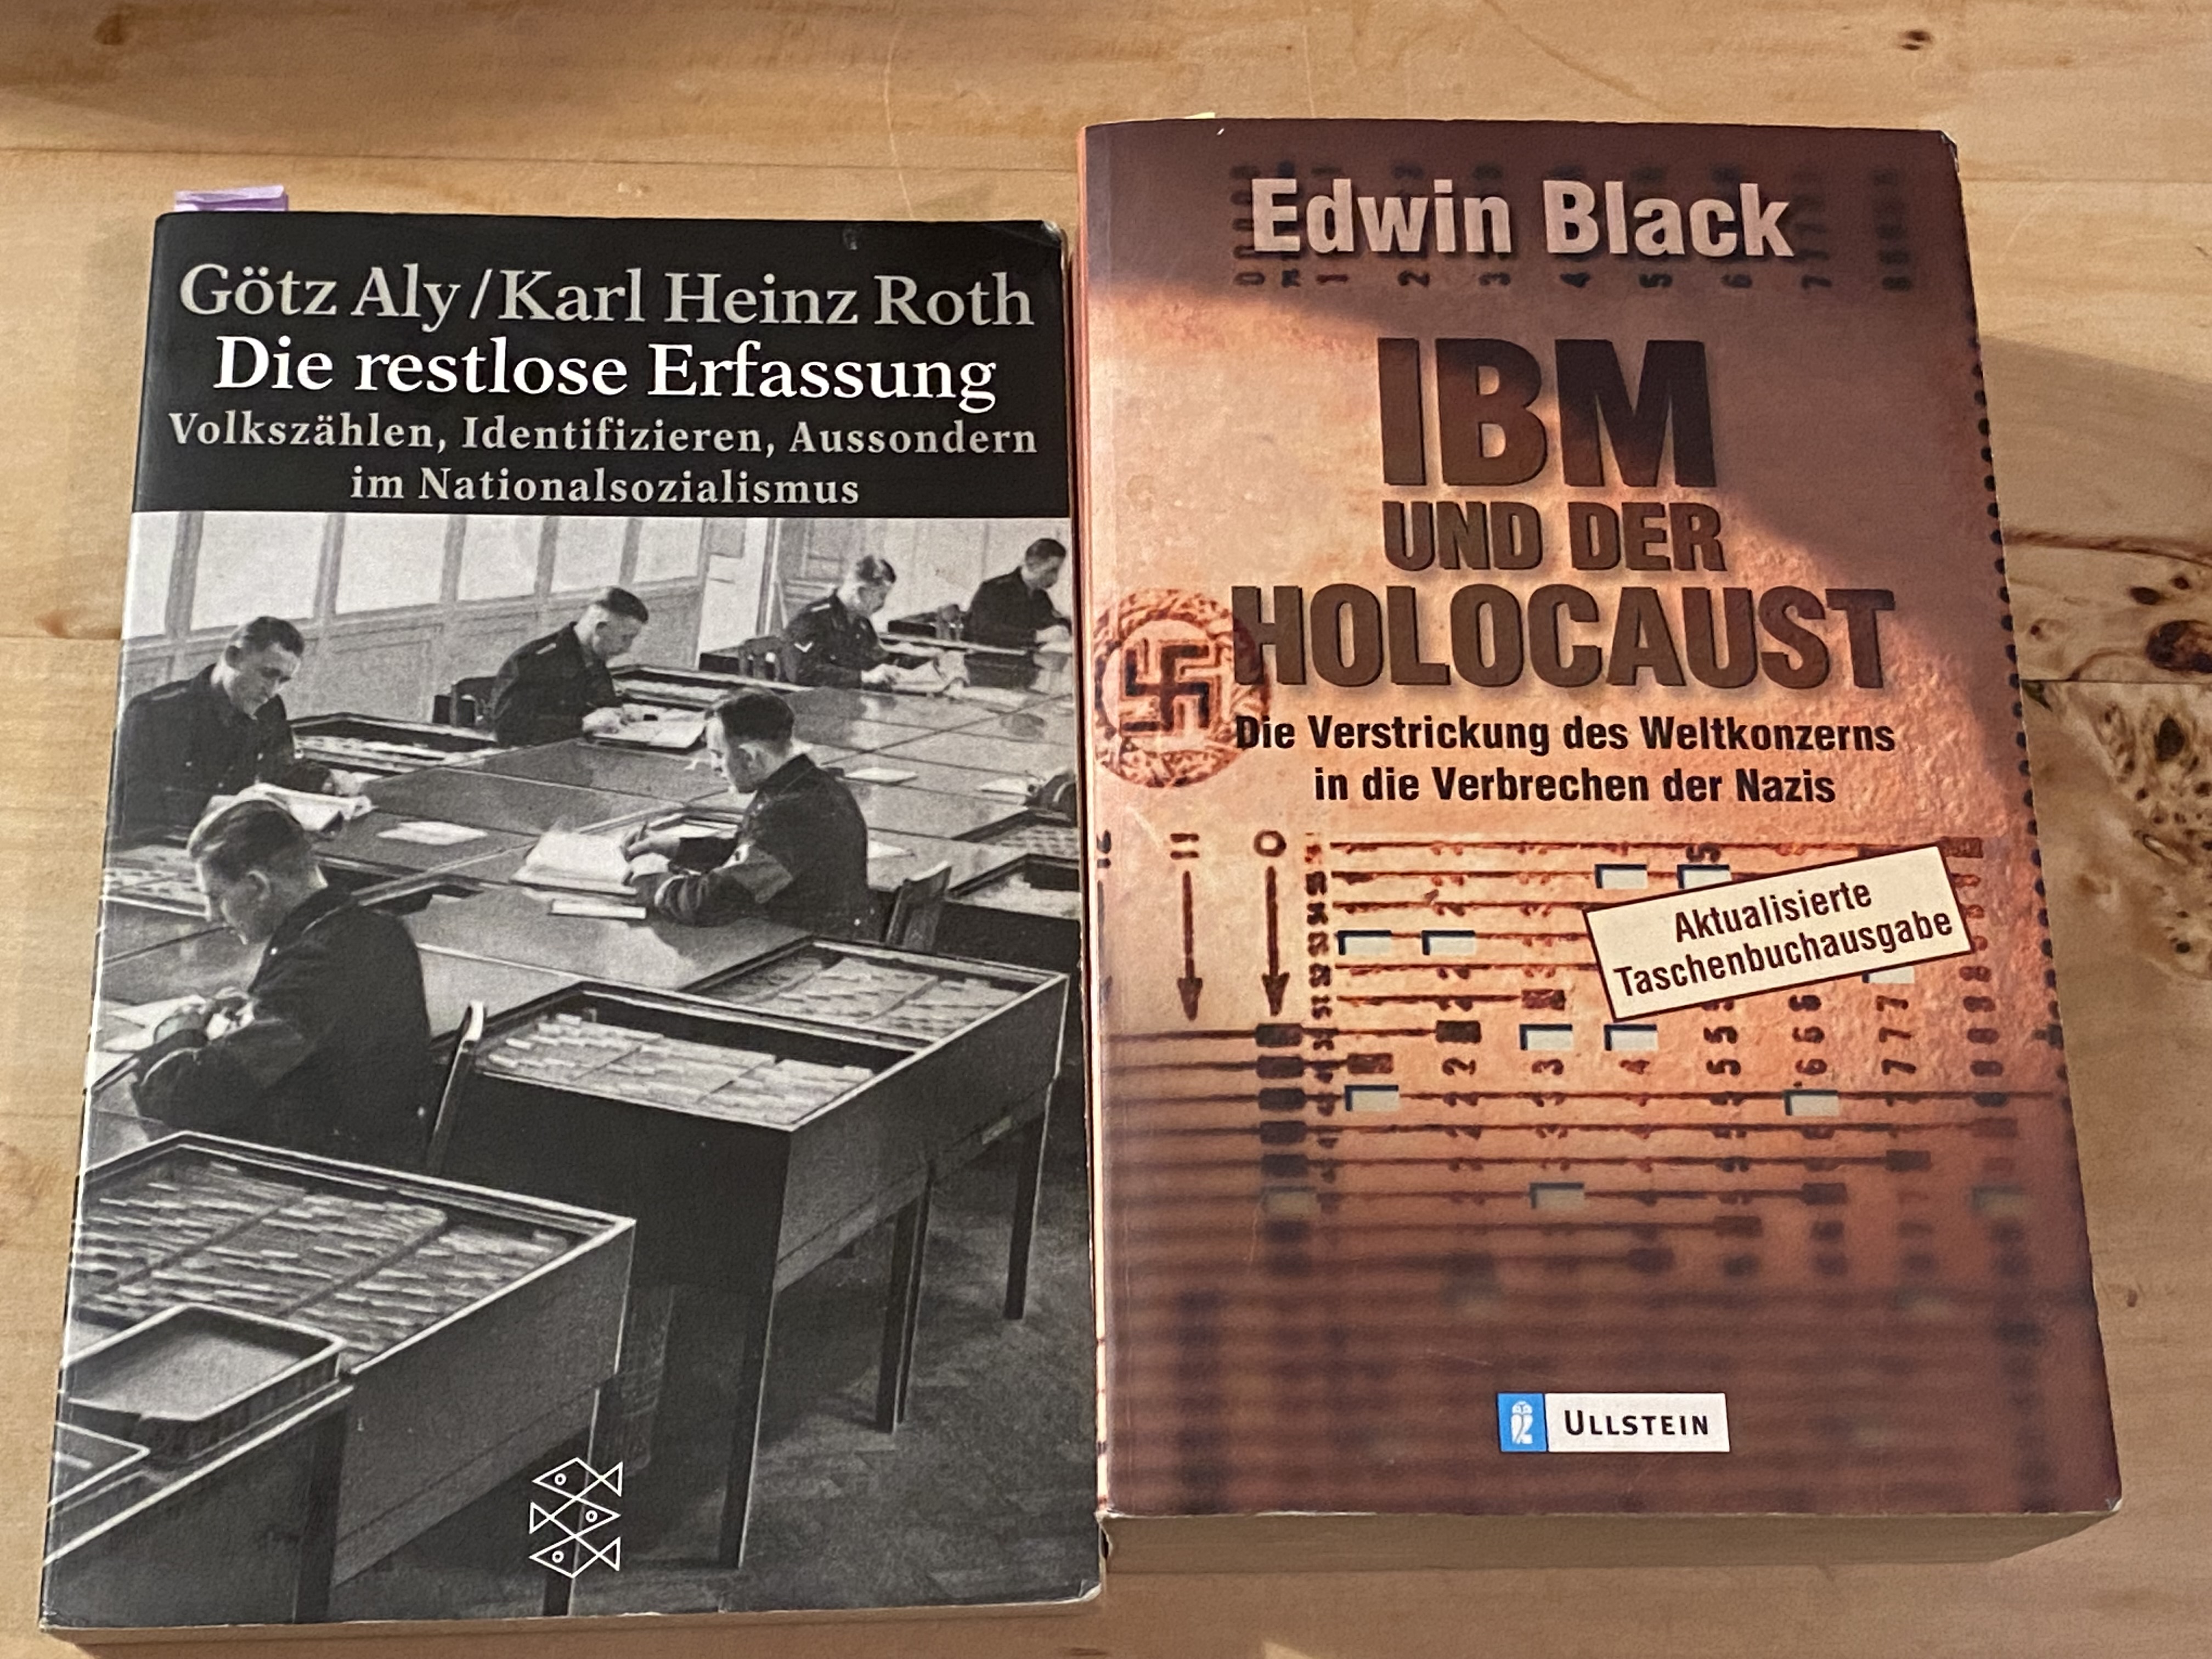 Zwei Bücher mit den Titeln "Die restlose Erfassung" von Aly/Roth und "IBM und der Holocaust" von Edwin Black